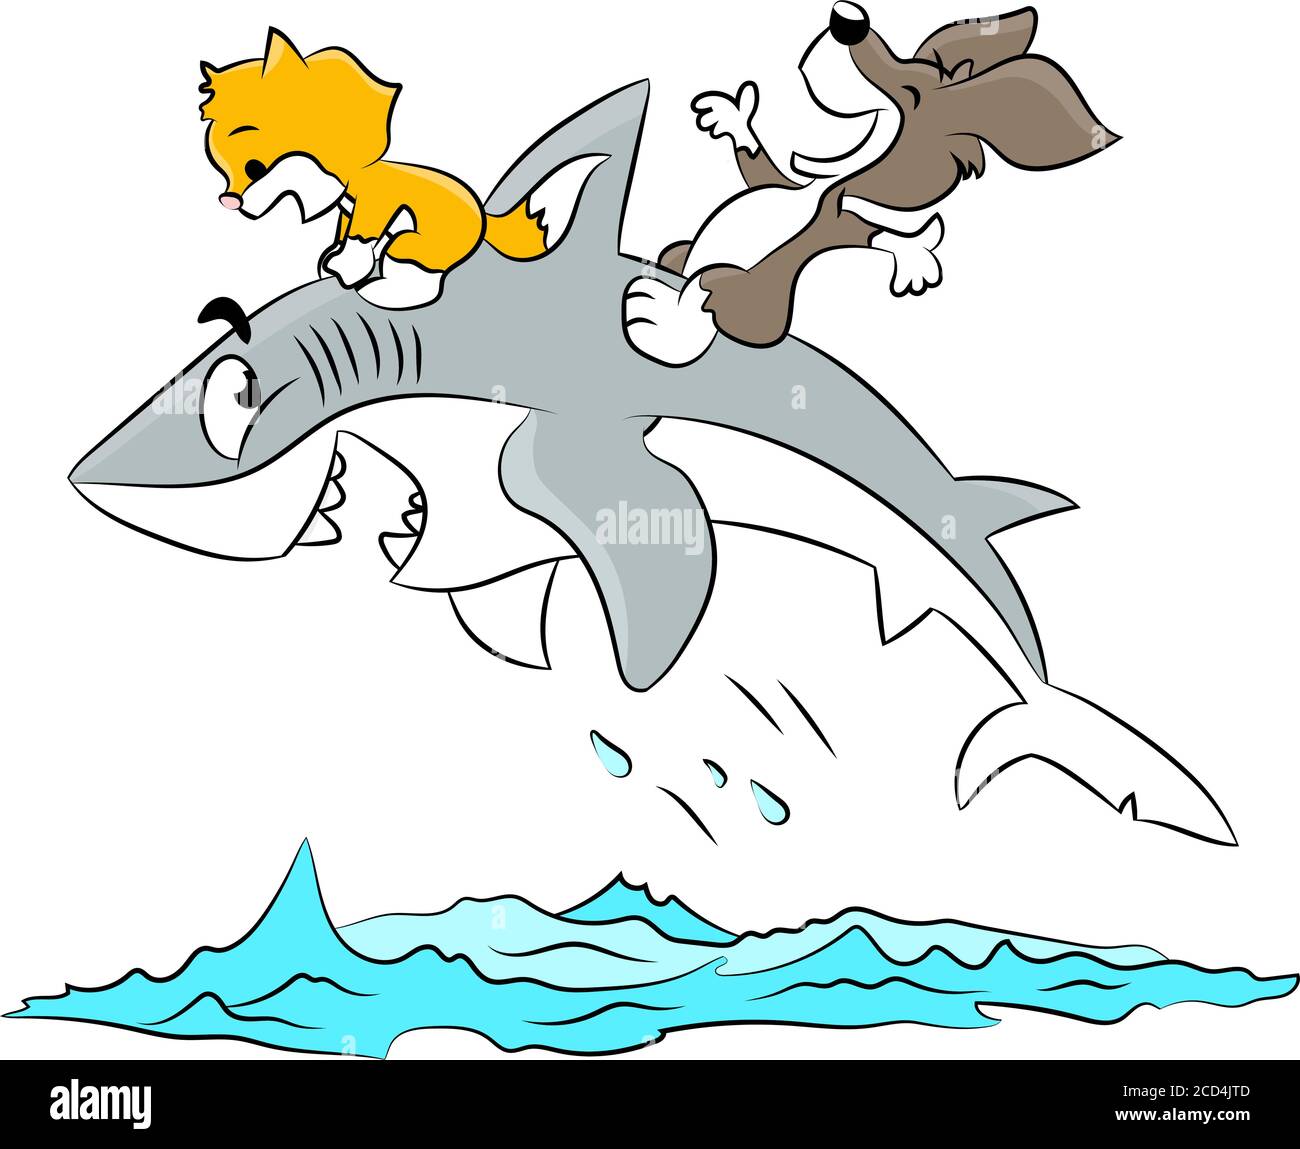 Cartoon cat and dog riding a shark enjoying summer vacation vector illustration Stock Vector